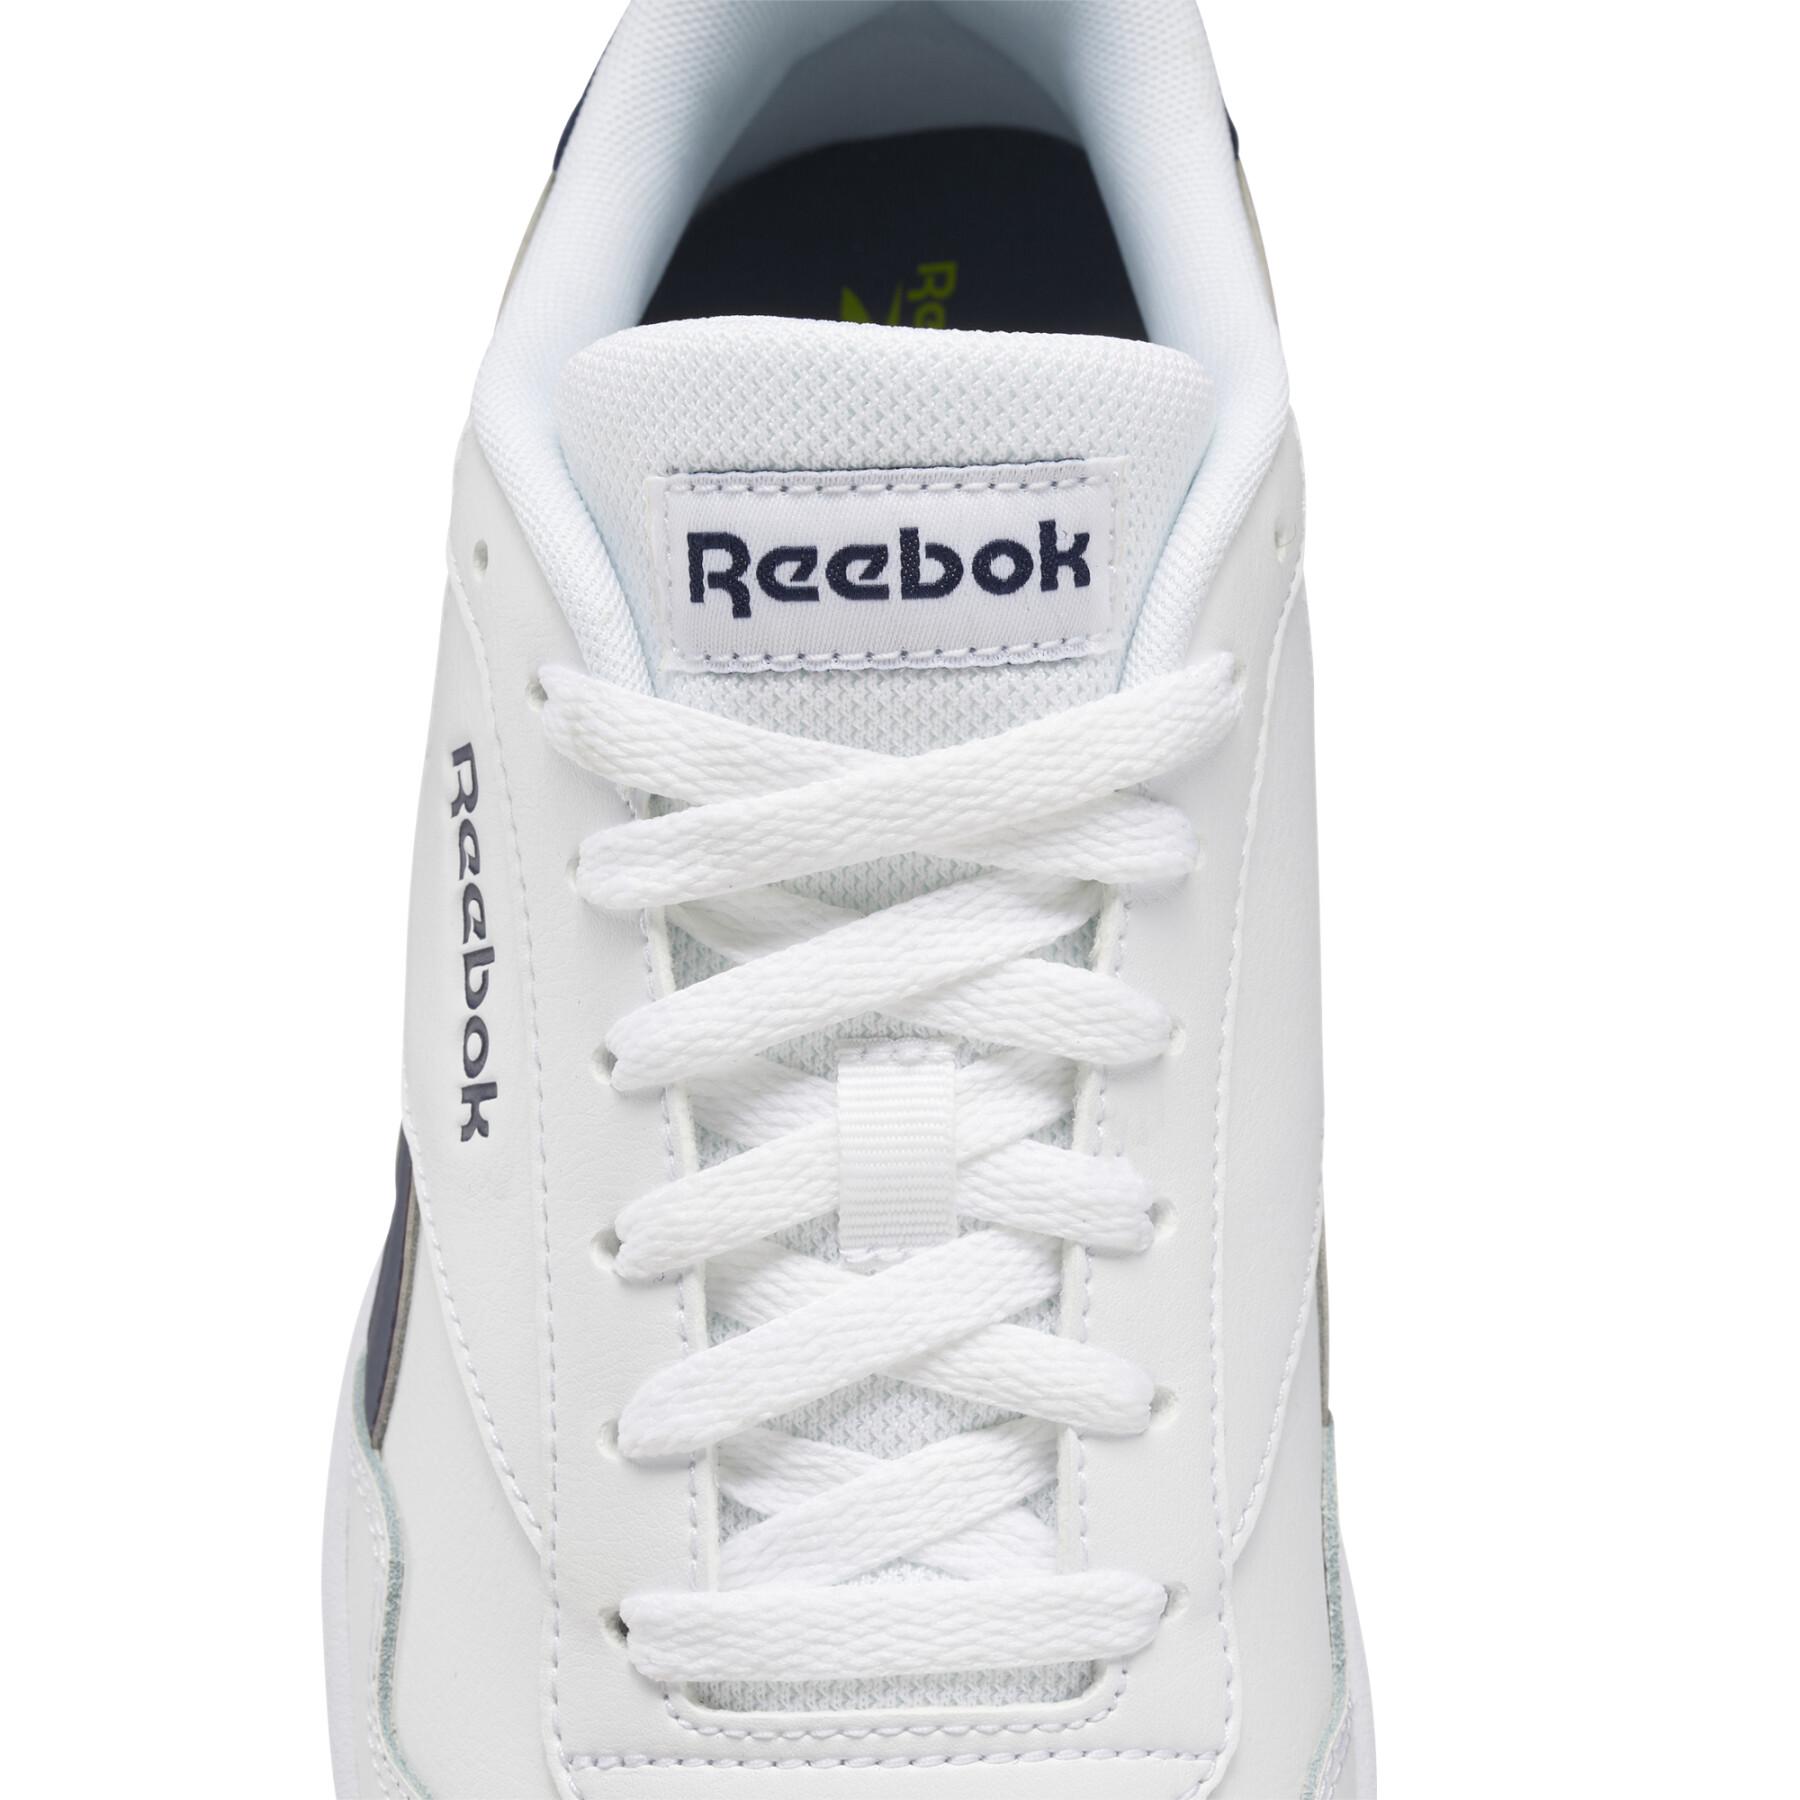 Schuhe Reebok Royal Techque